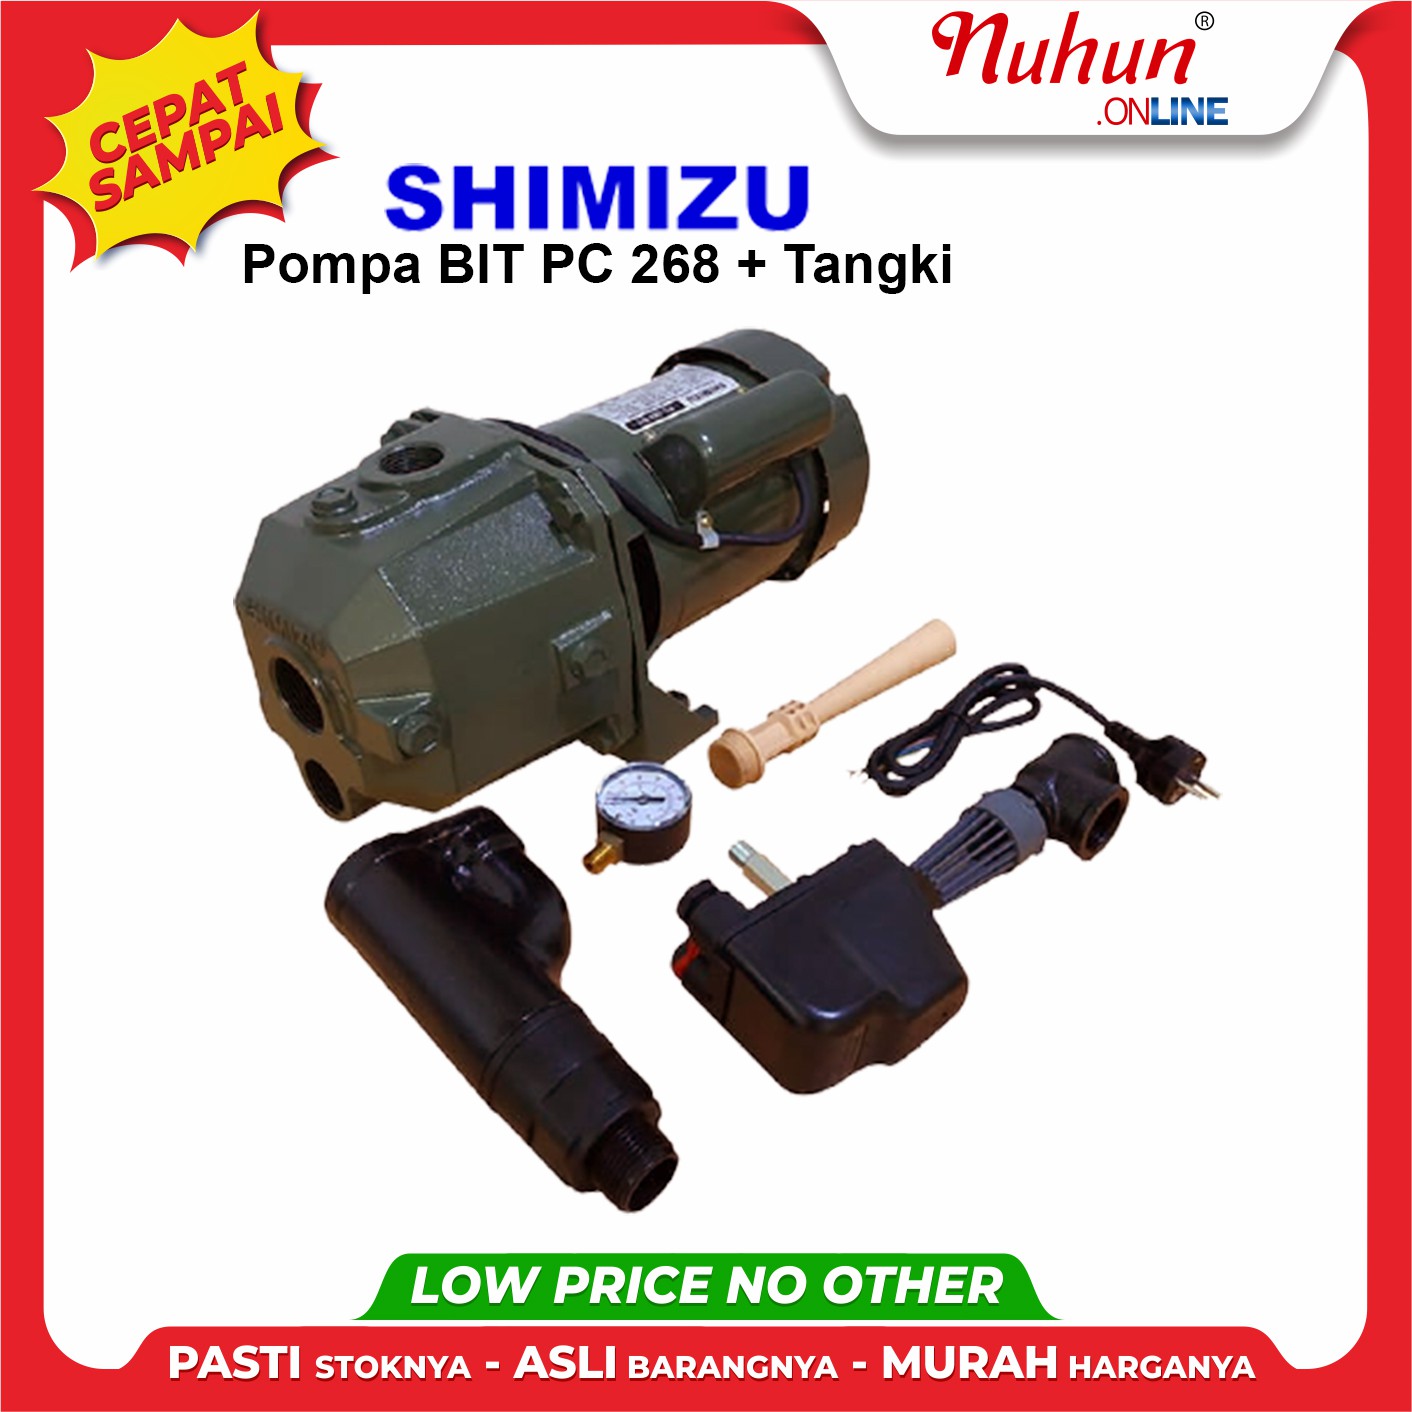 Shimizu Pompa BIT PC 268 plus Tangki